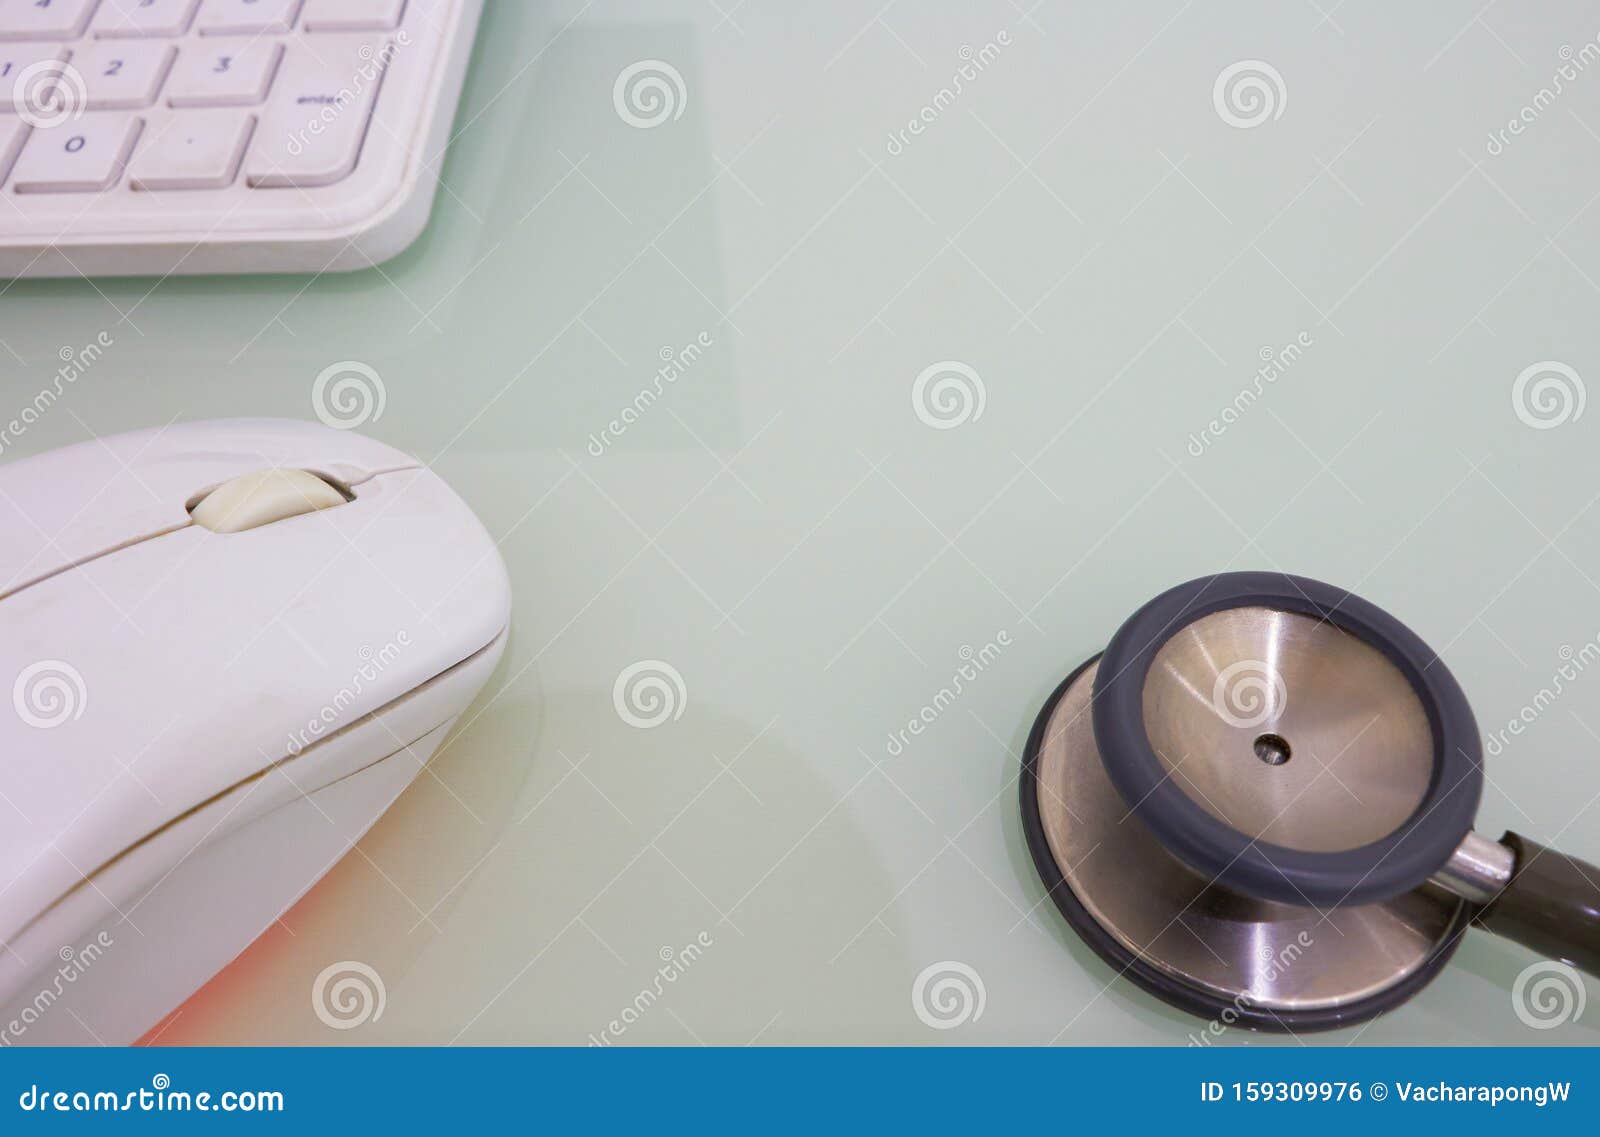 Stethoscope, mouse e teclado para o conceito de tecnologia médica